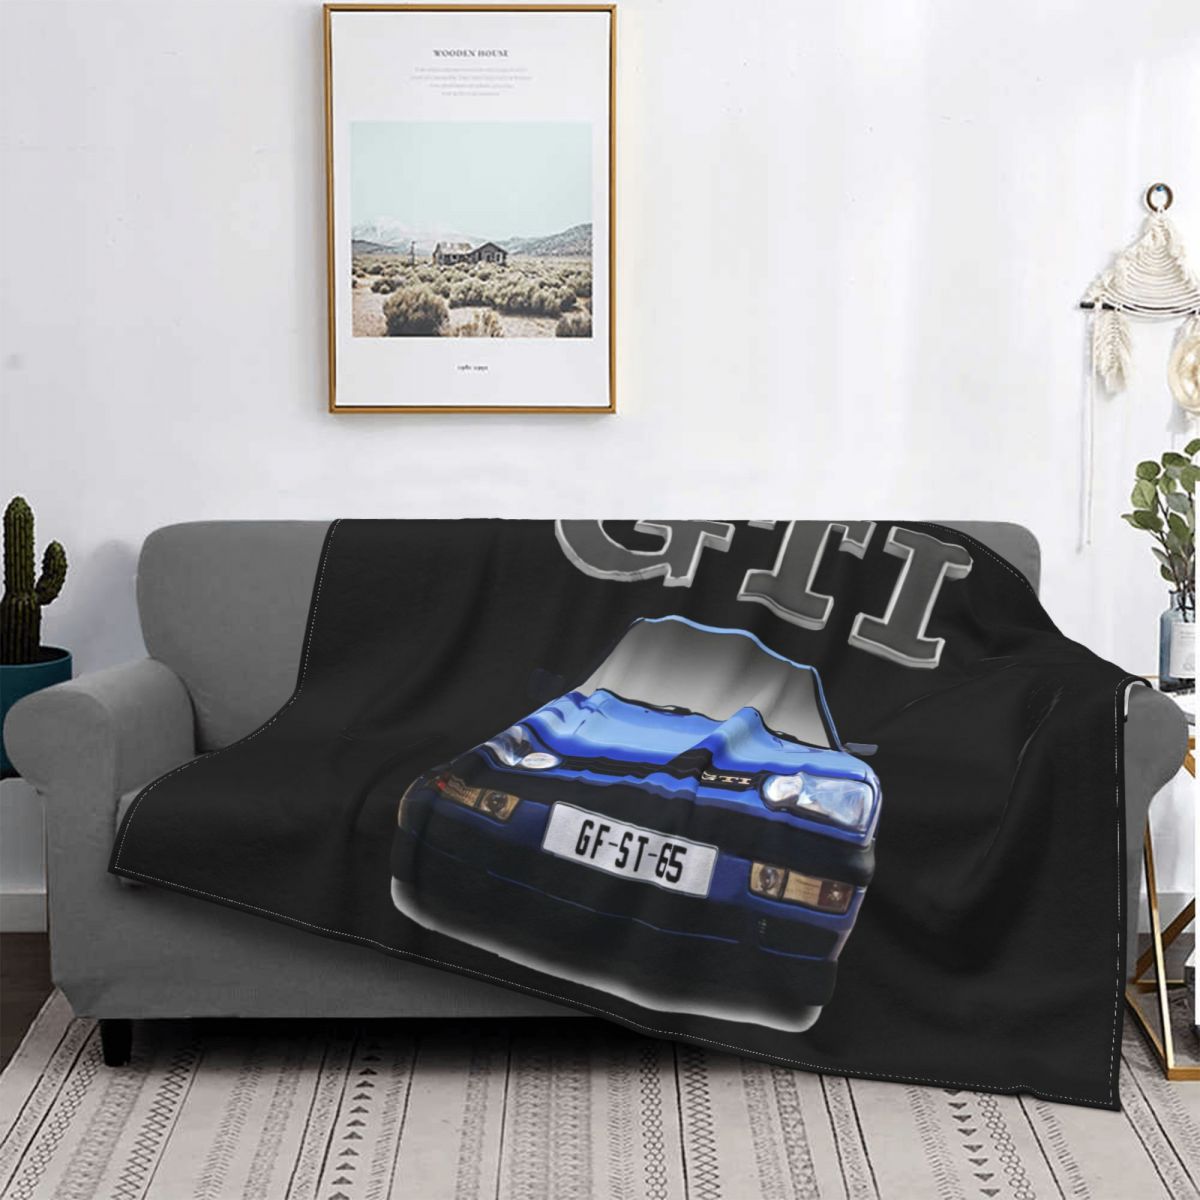 🚘Custom Car Blanket with Your Car Photo